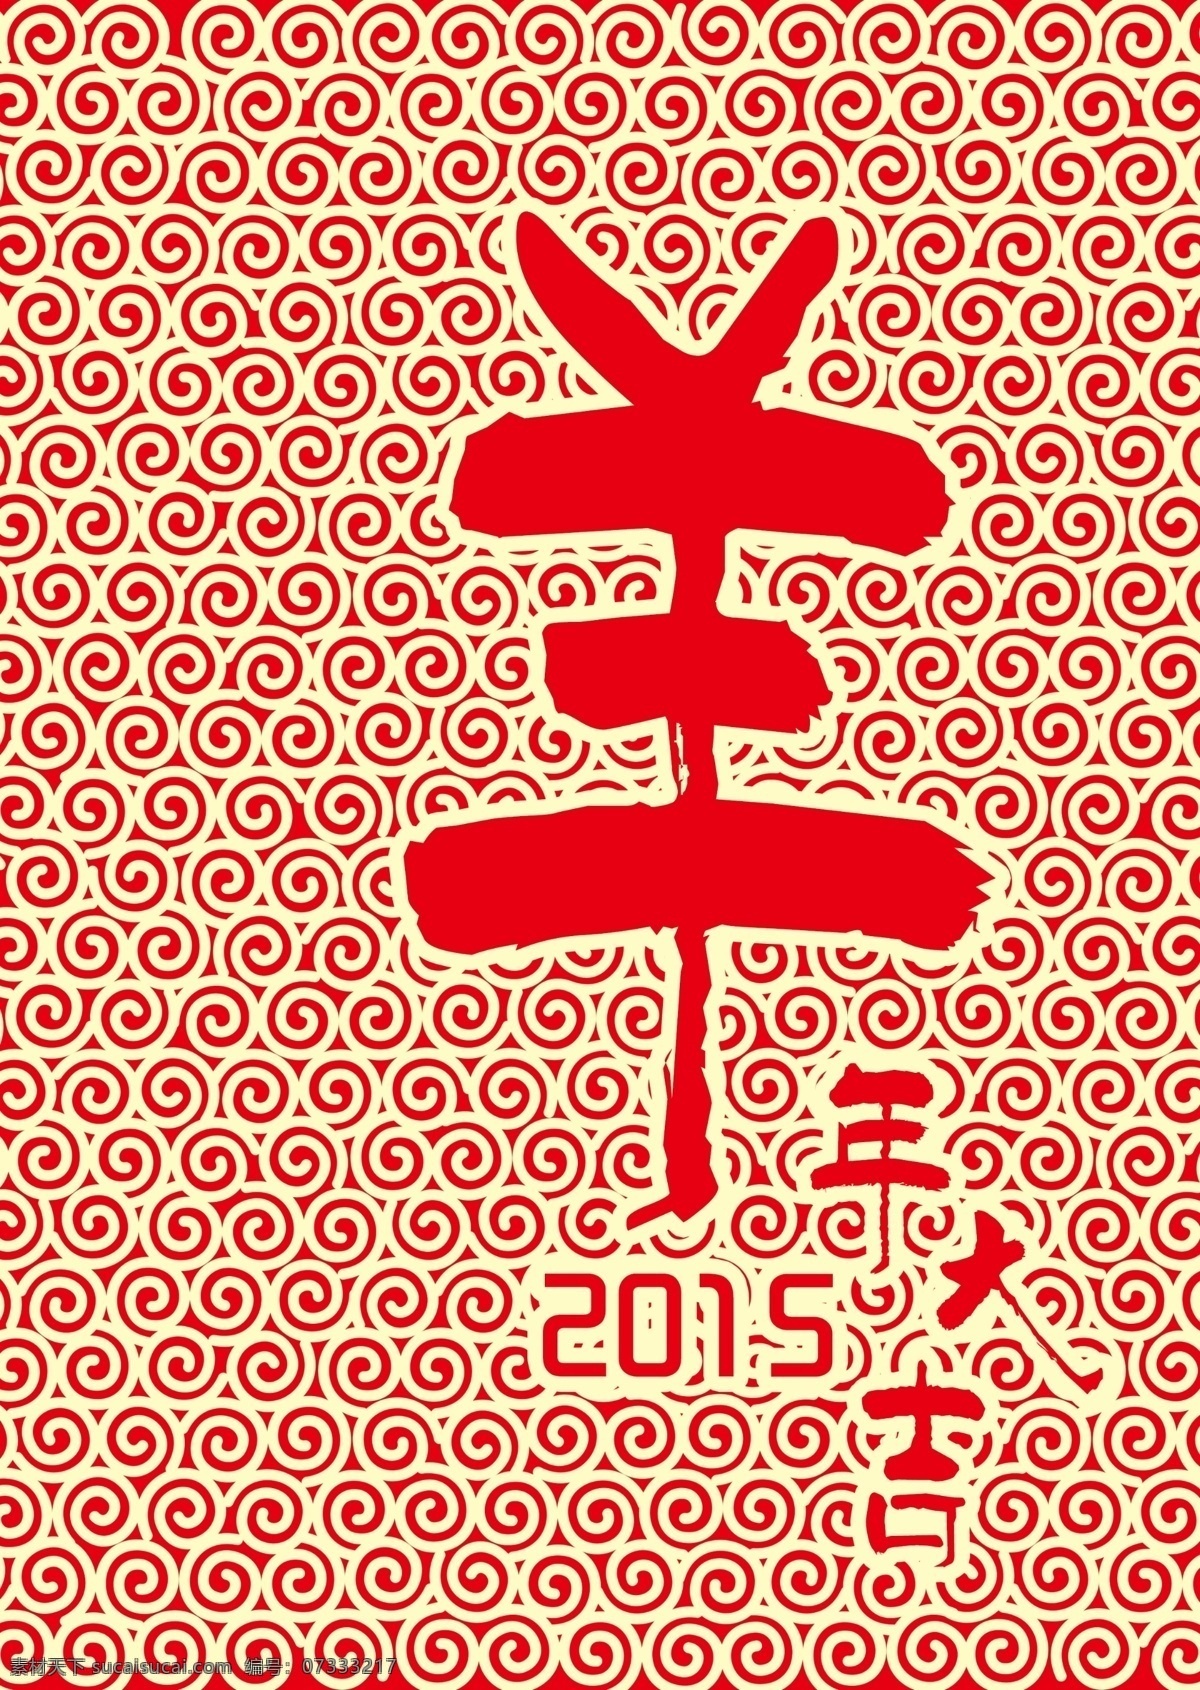 羊年 元素 字体 格式 毛笔字体 元素设计 节日素材 2015羊年